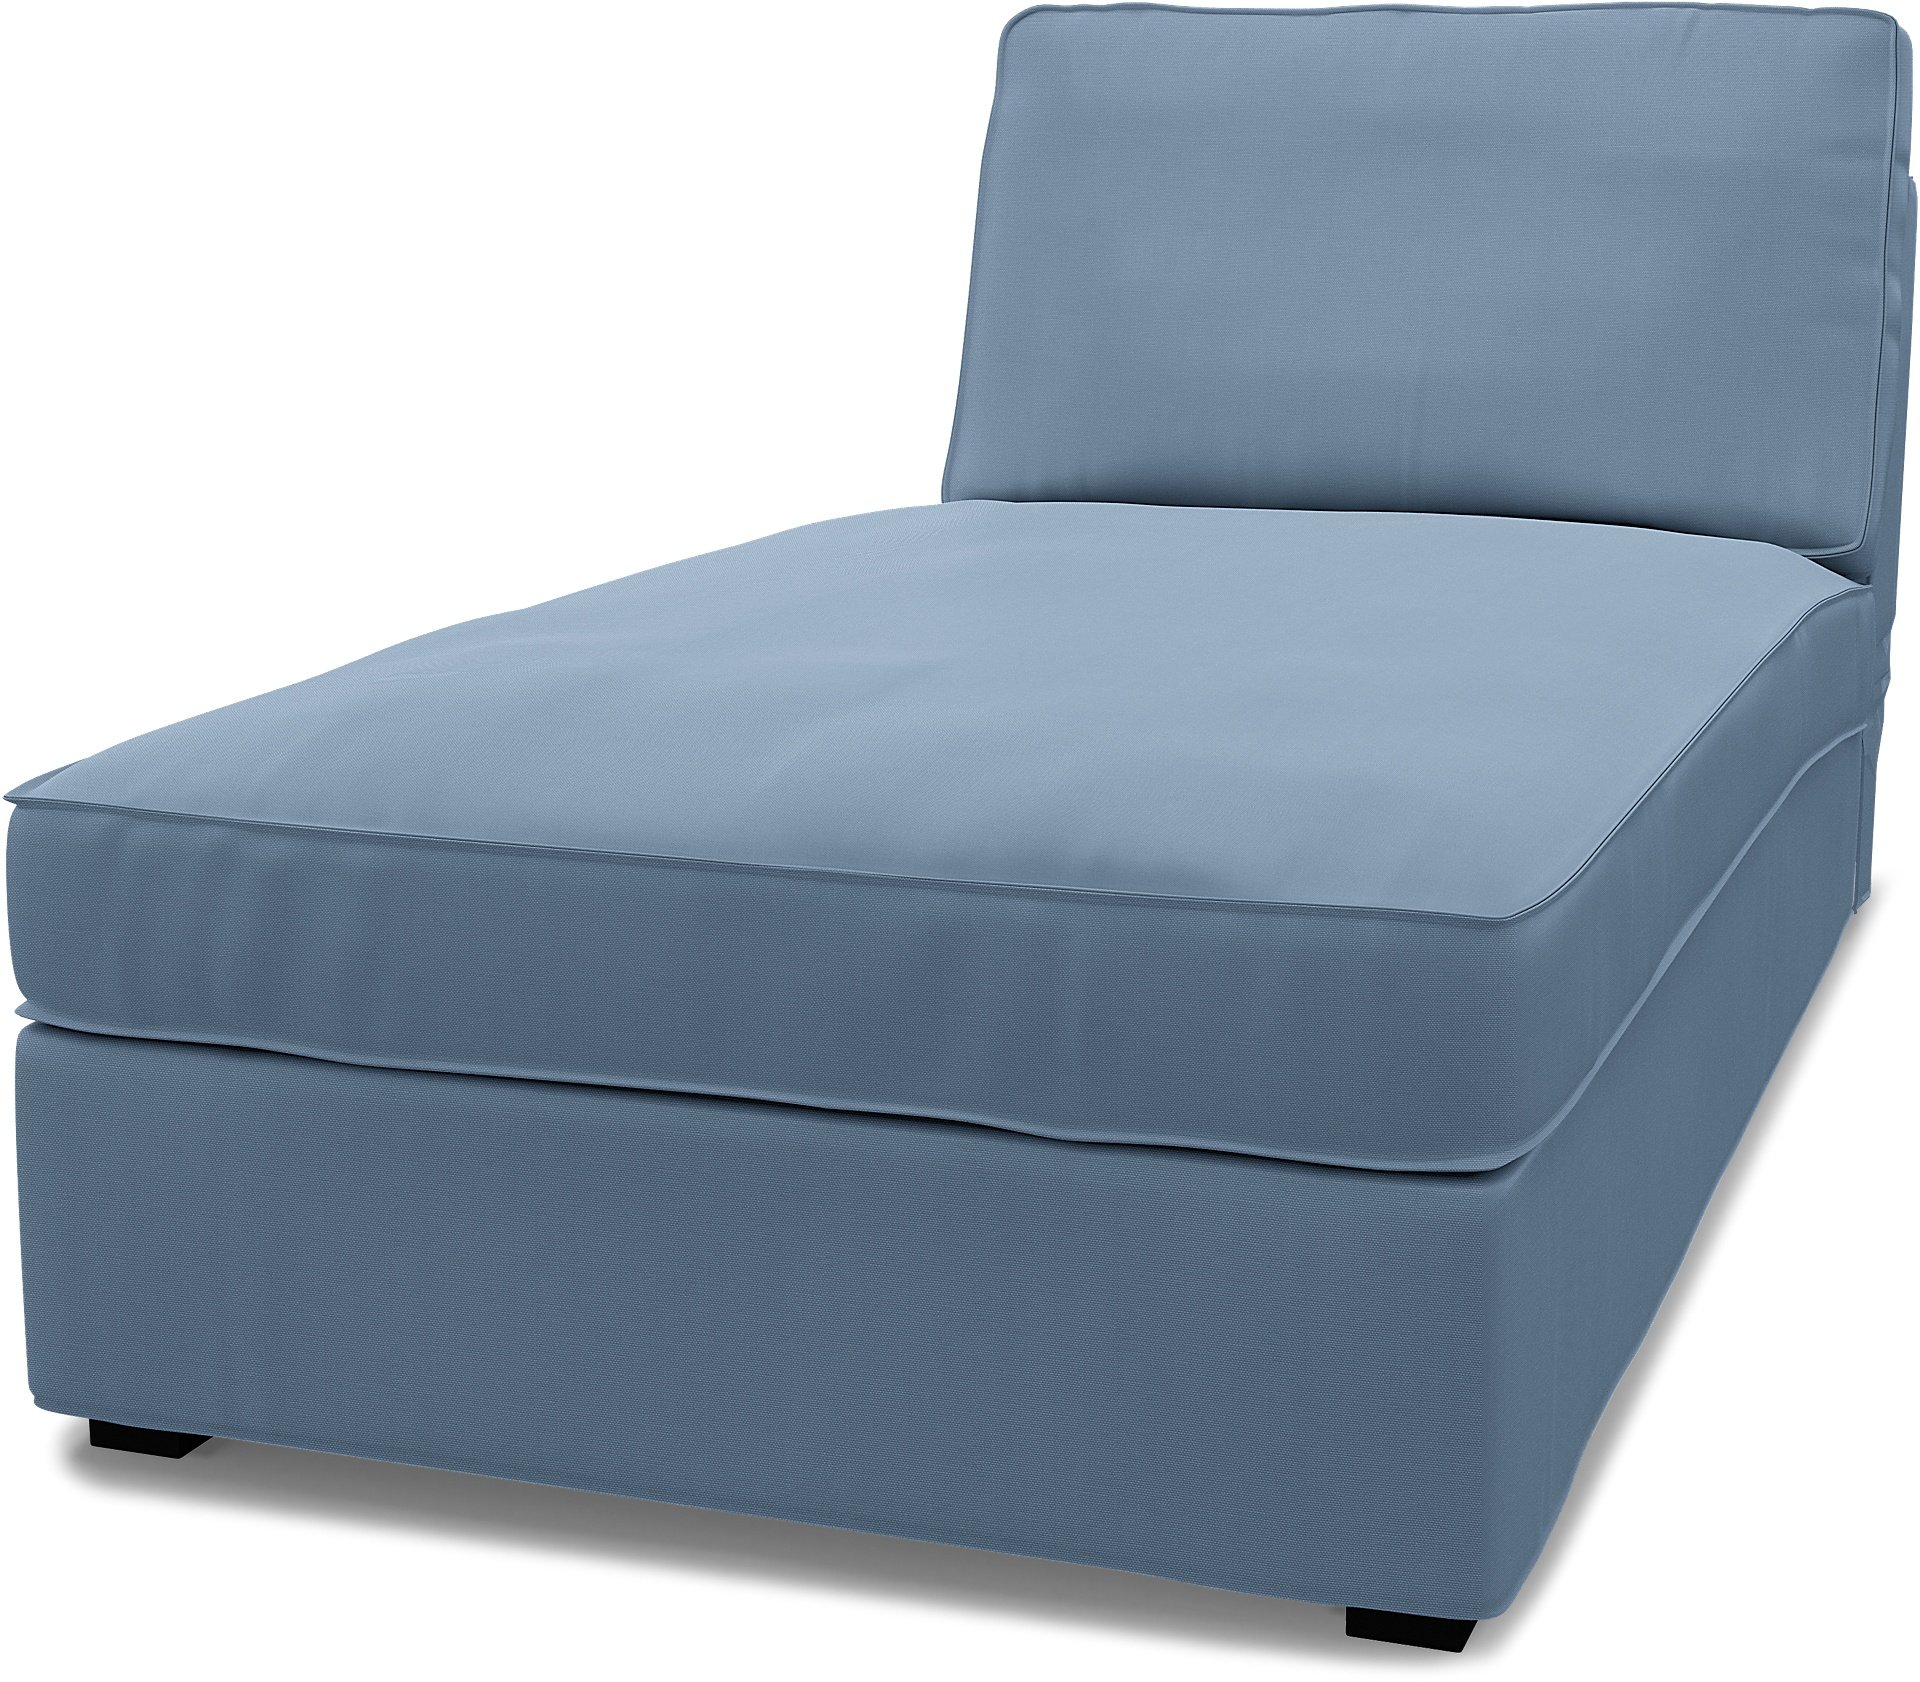 IKEA - Kivik Chaise Longue Cover, Dusty Blue, Cotton - Bemz